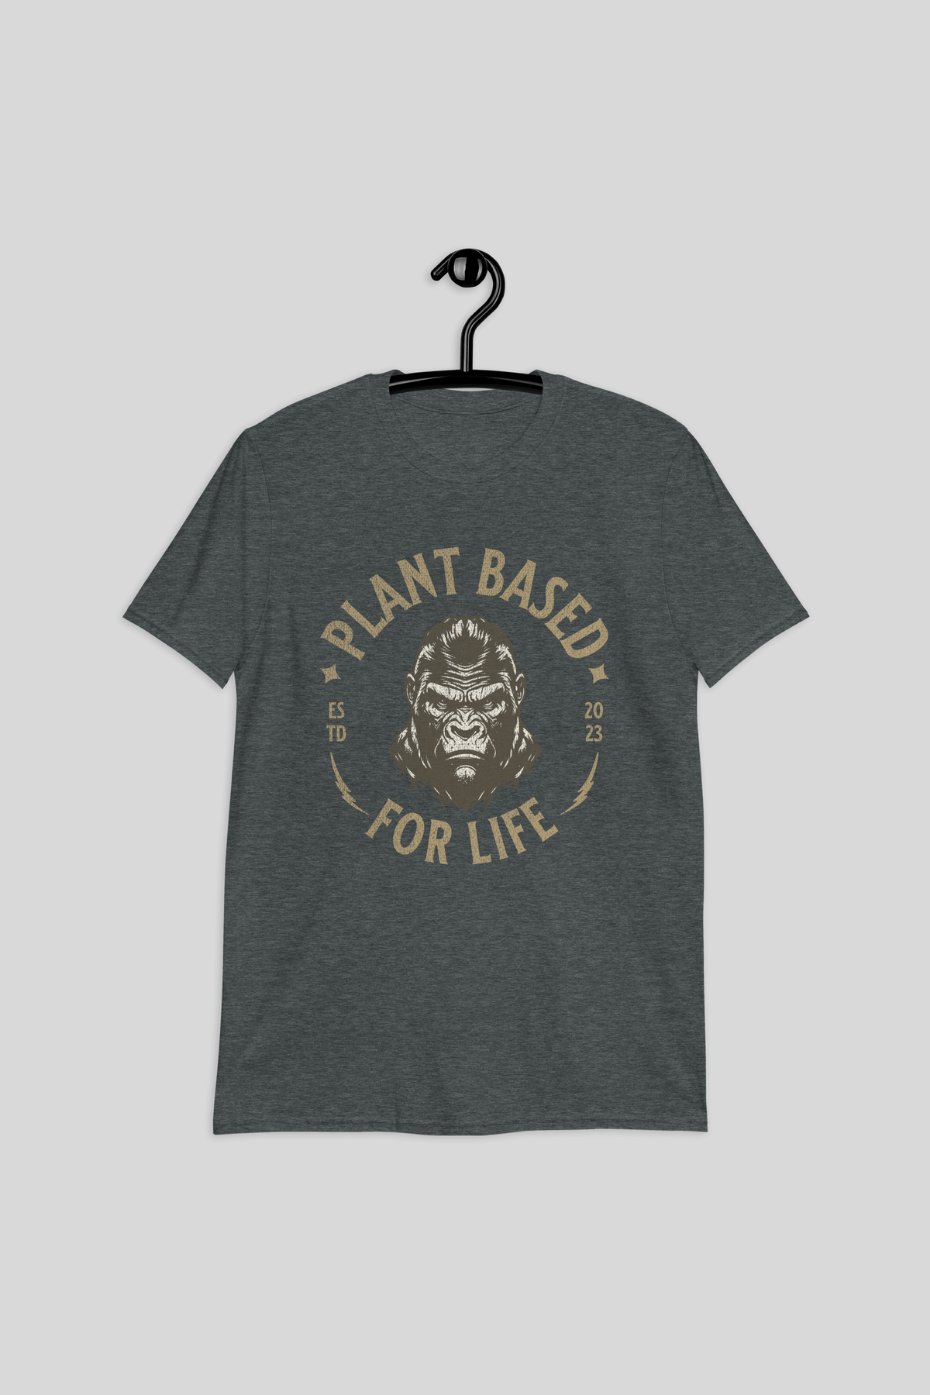 Plant Based For Life Unisex Basic T-Shirt